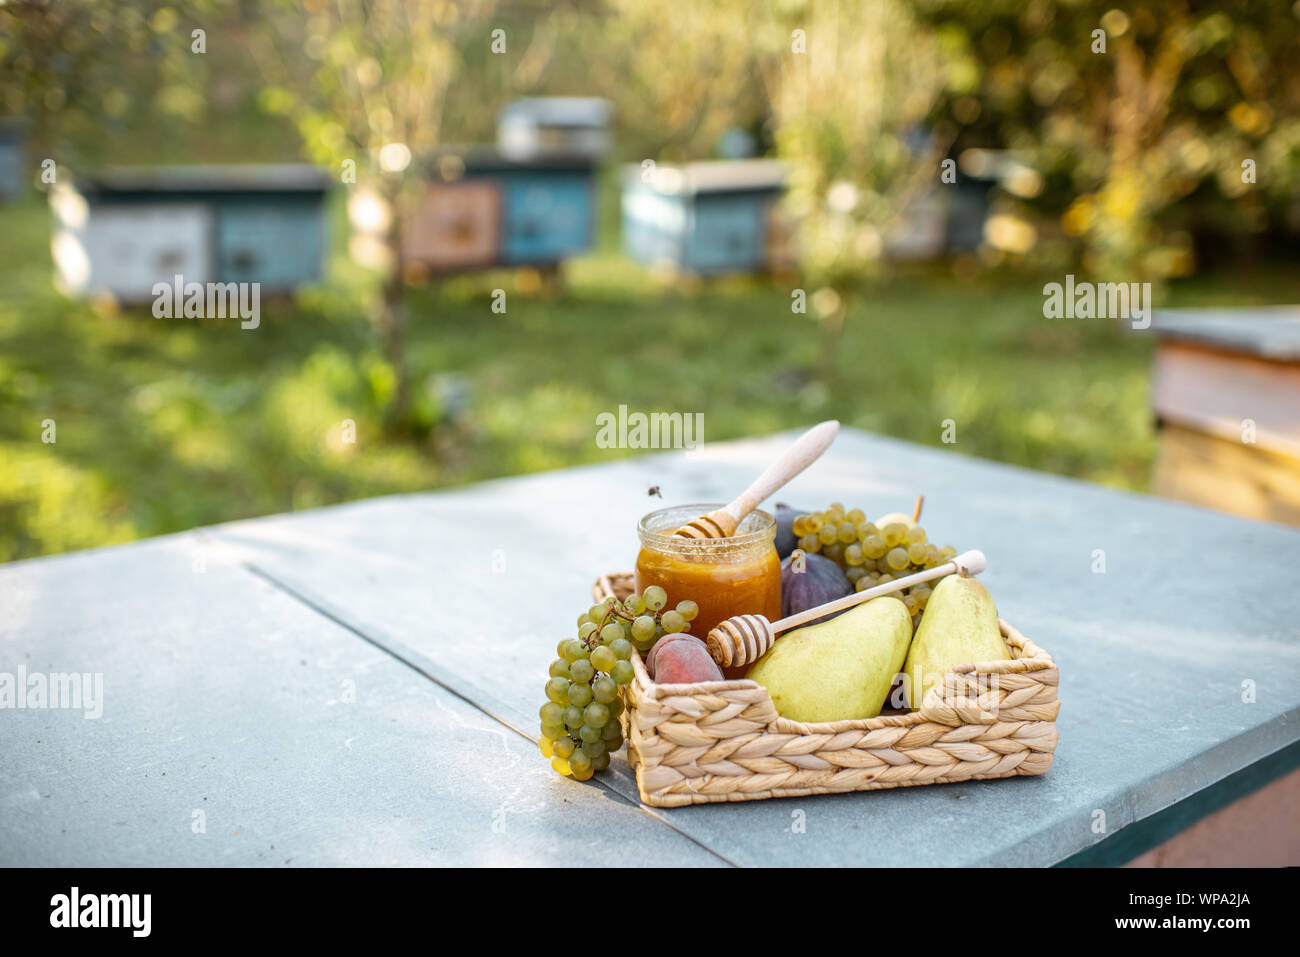 Composizione di frutti dolci e jar con del miele per alveare all'alveare, immagine con spazio di copia Foto Stock